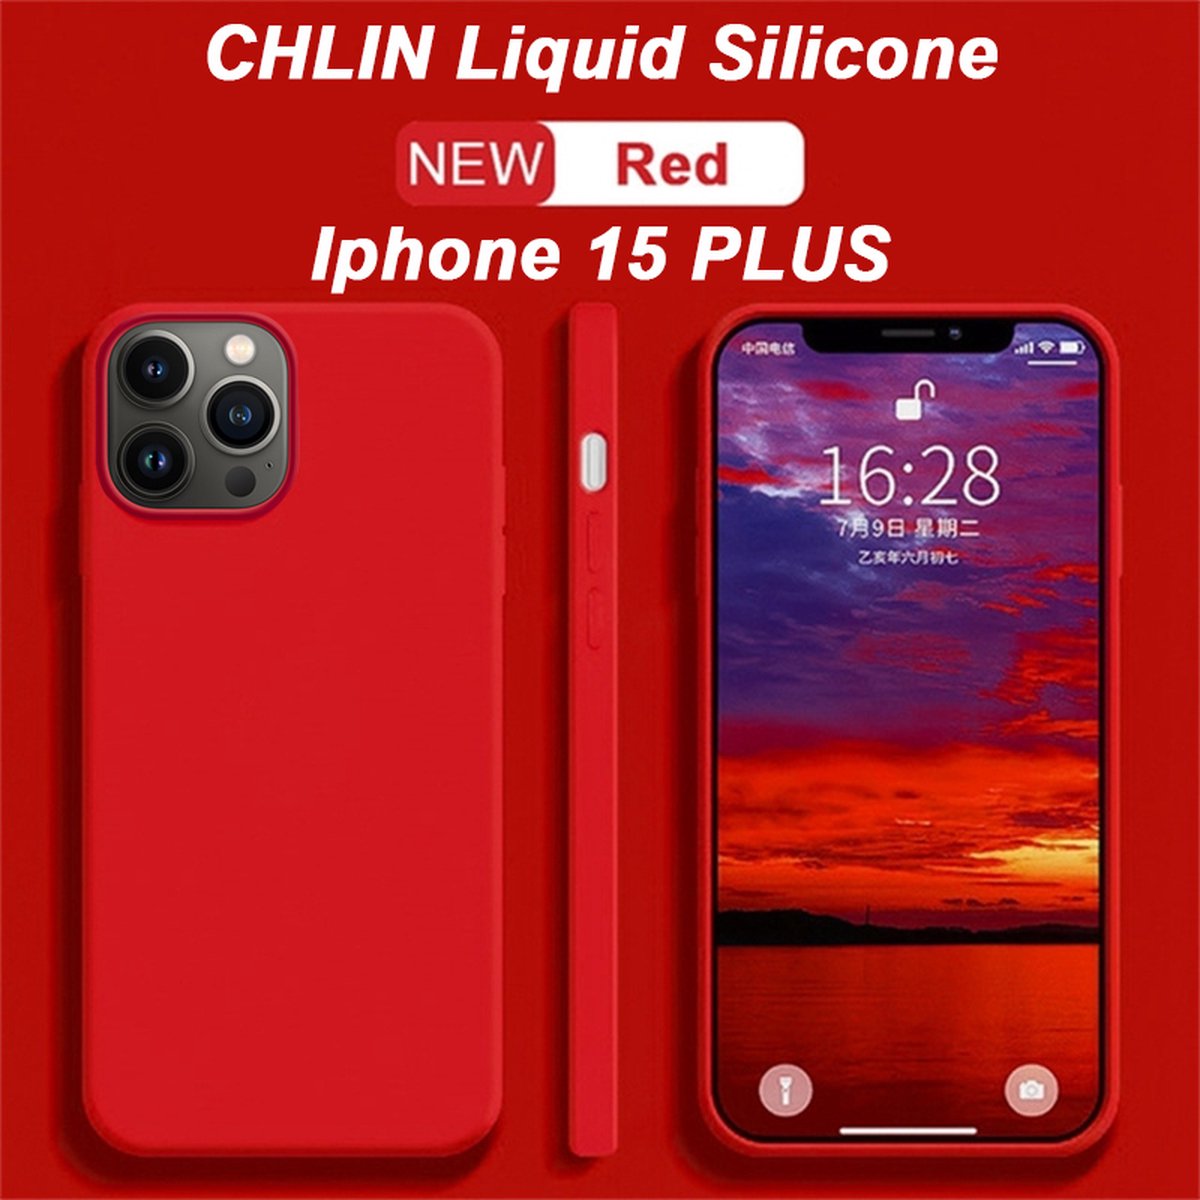 CL CHLIN® Premium Siliconen Case Iphone 15 Plus ROOD - Iphone 15 Plus hoesje - Iphone 15 Plus case - Iphone 15 Plus hoes - Silicone hoesje - Iphone 15 Plus protection - Iphone 15 Plus protector.